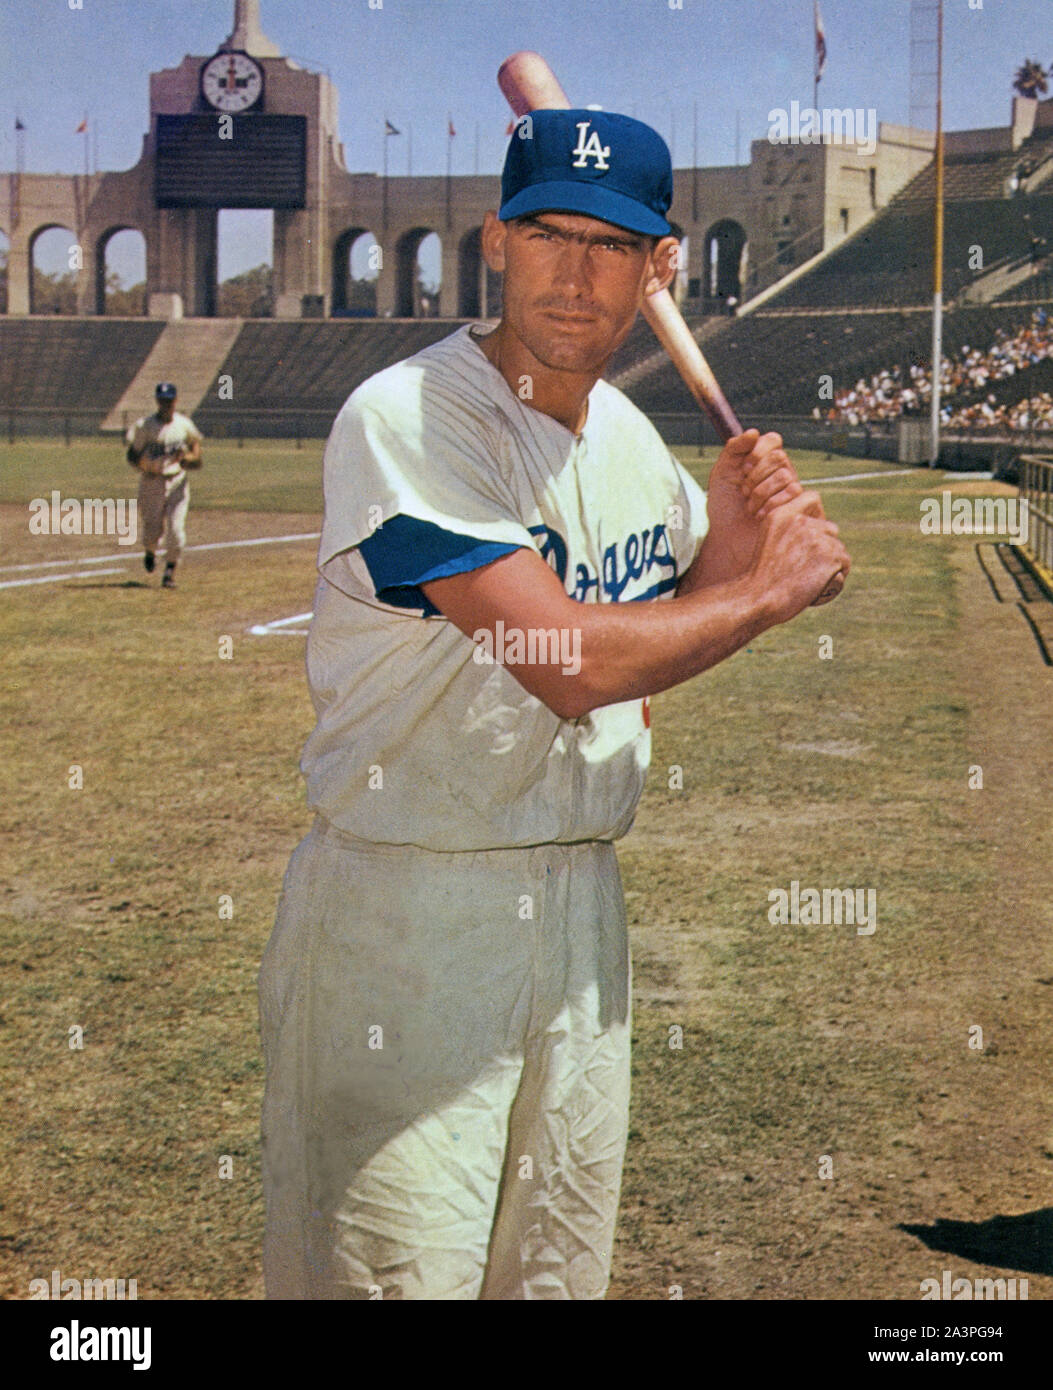 Wally Mond war eine ikonische Baseball Spieler mit den Los Angeles Dodgers in den späten 1950er Jahren, als sie nach Hause, Spiele am Memorial Coliseum gespielt. Stockfoto